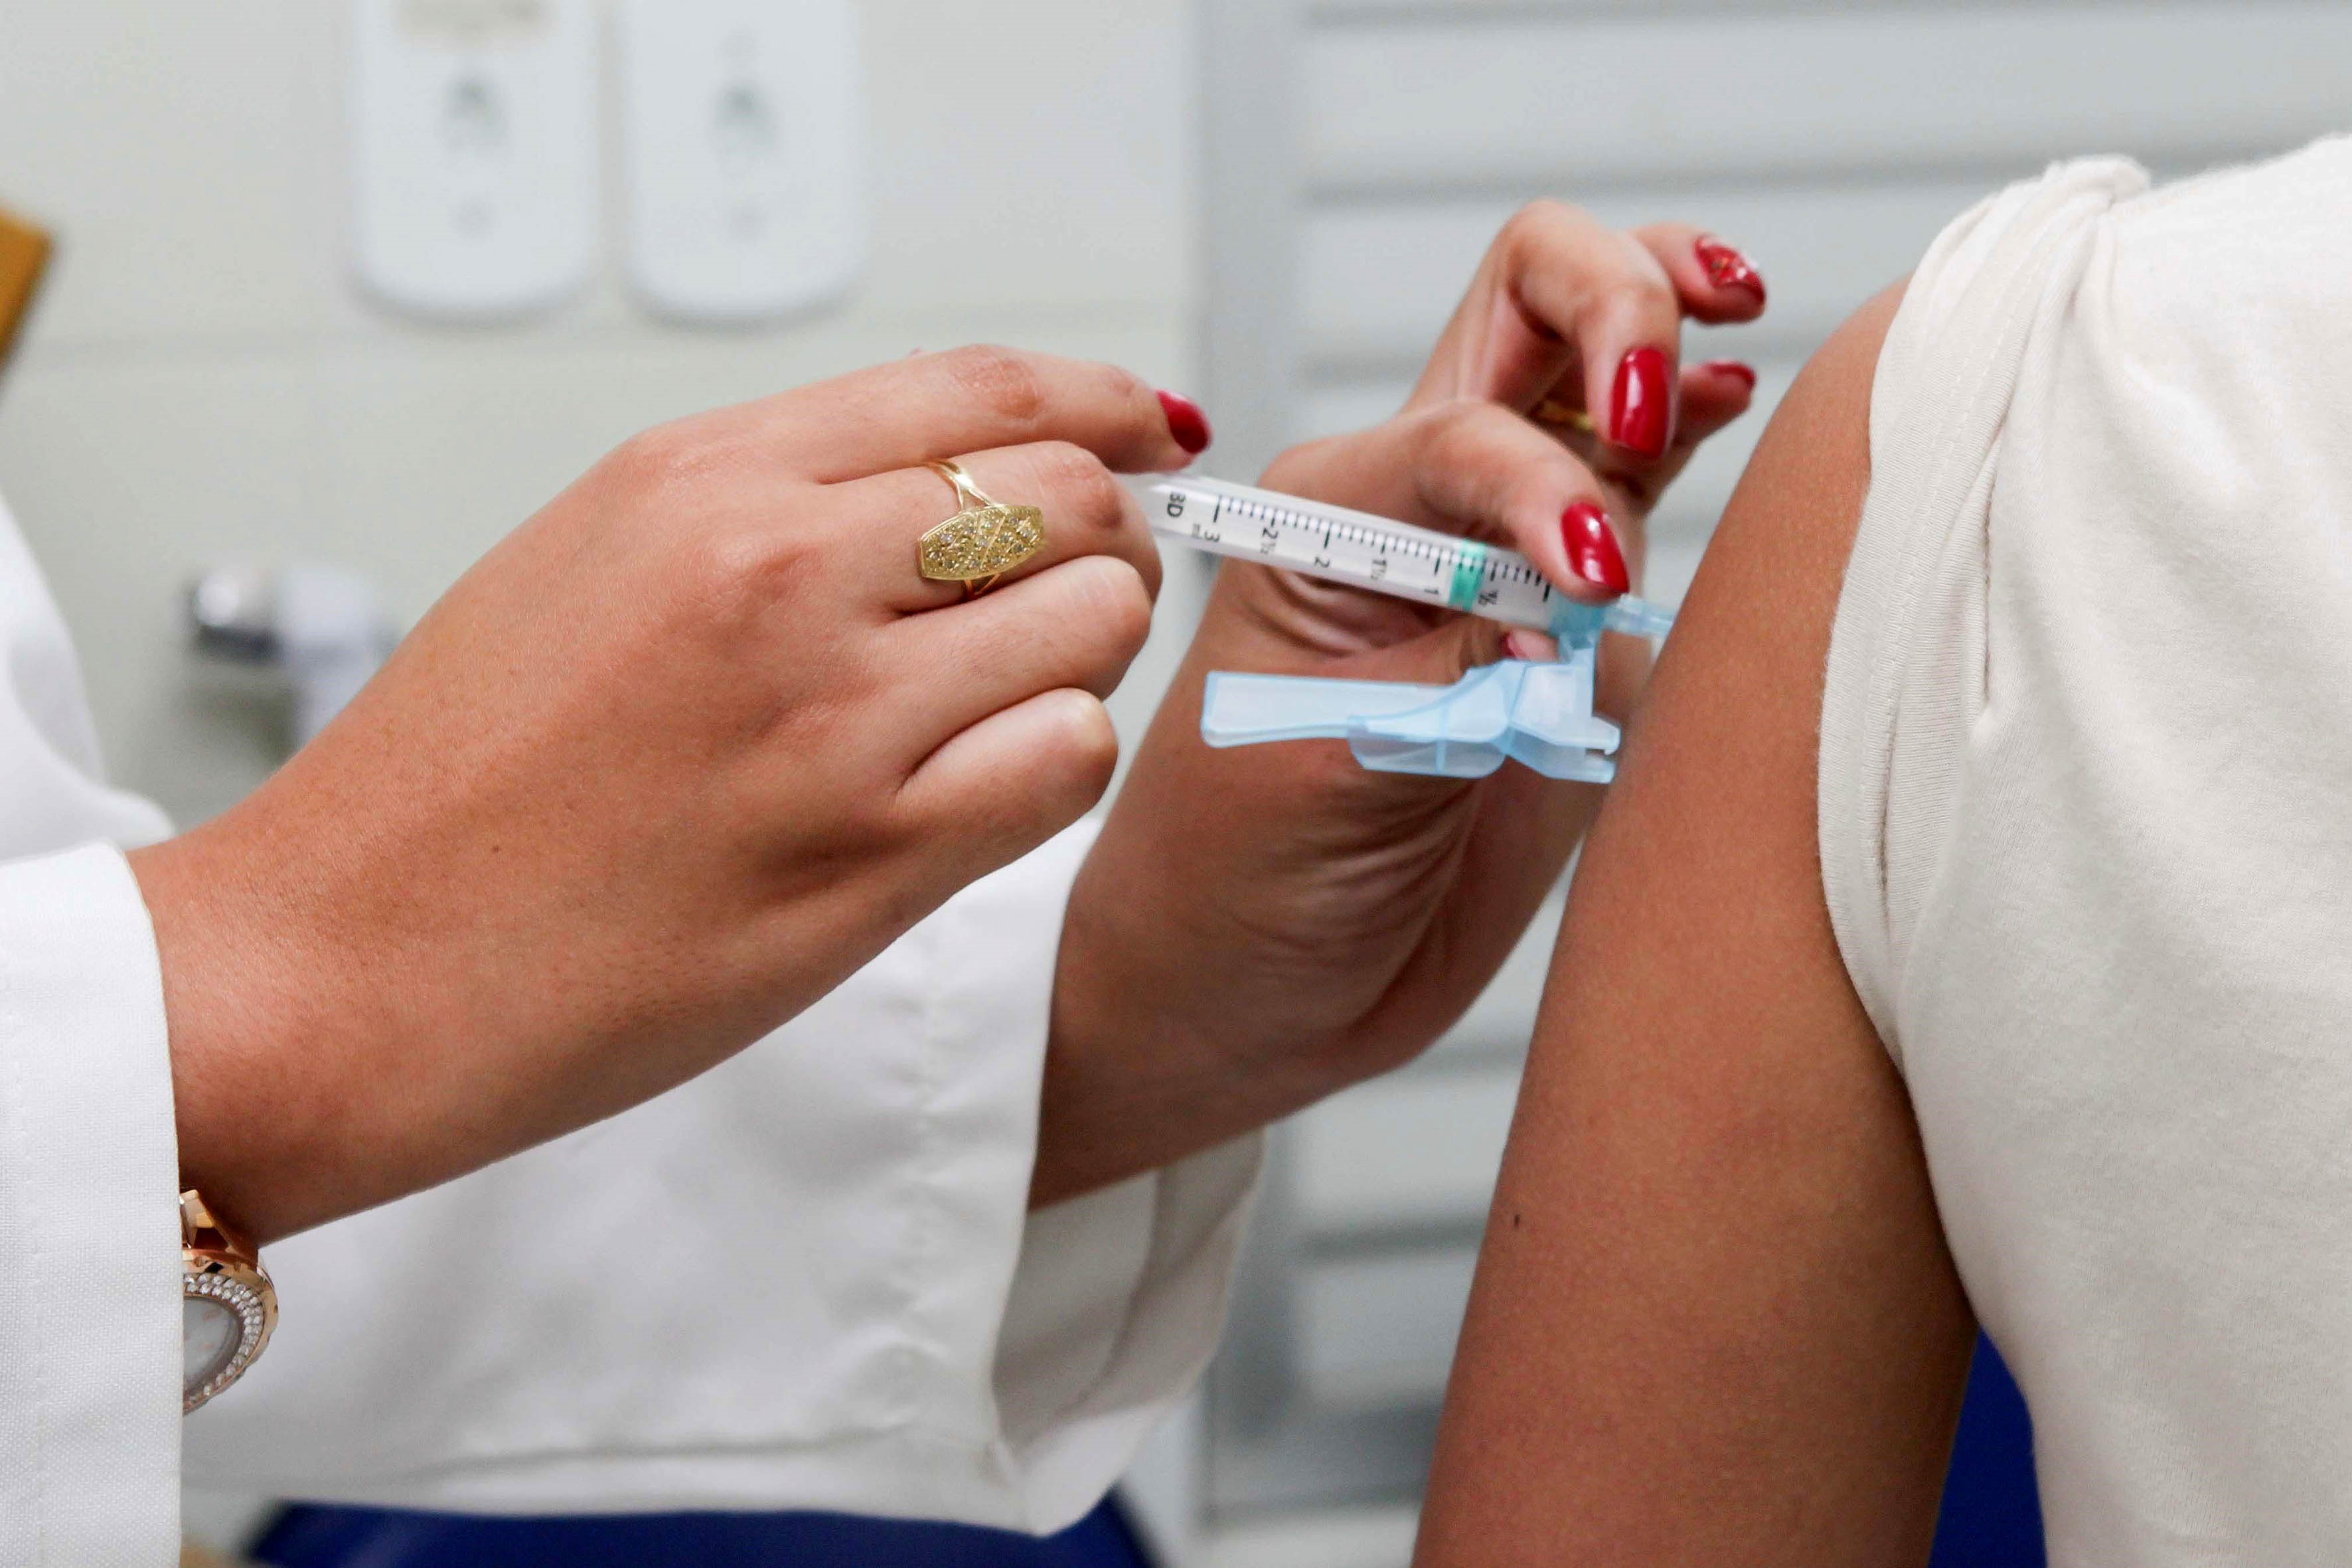  Parauapebas, Canaã e Curionópolis estão na lista de municípios paraense com recomendação para vacinação contra febre amarela